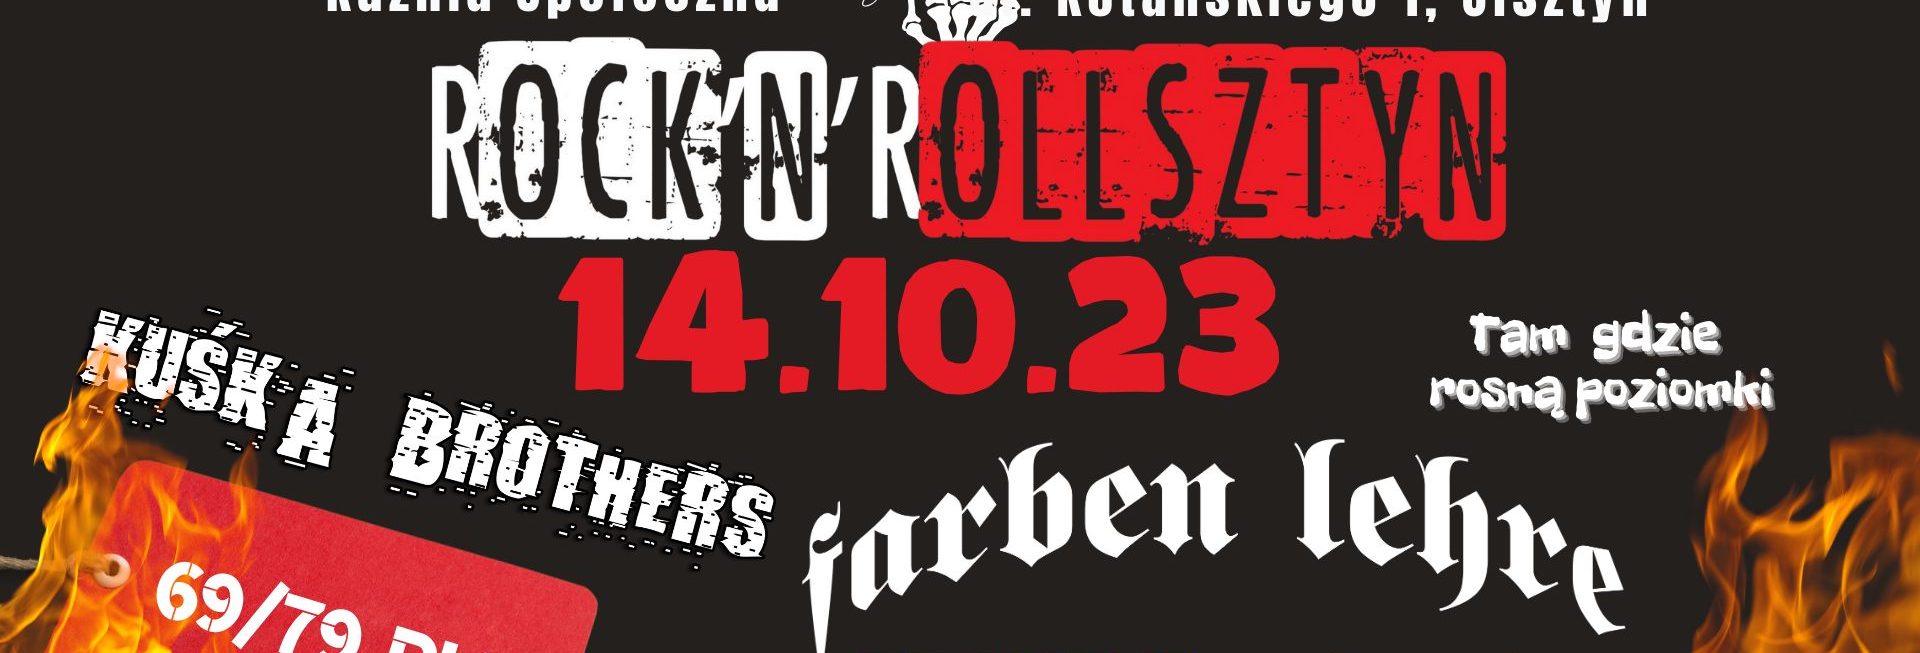 Plakat zapraszający w sobotę 14 października 2023 r. do Olsztyna na koncert ROCK'N'ROLLSZTYN Olsztyn 2023.